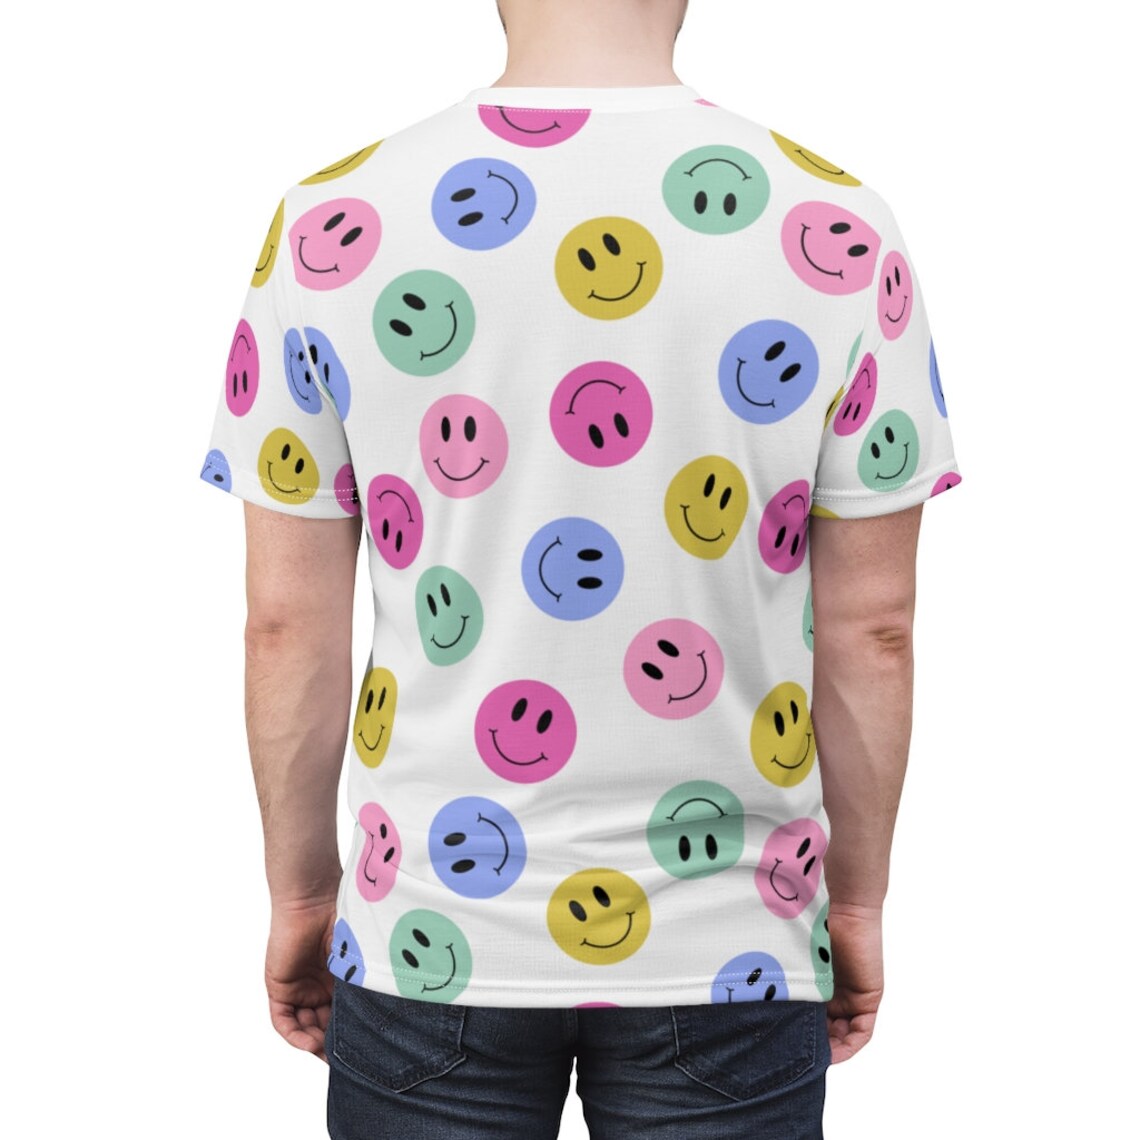 Smiley Unisex Shirt retro smiley tee smilies shirt smiley | Etsy